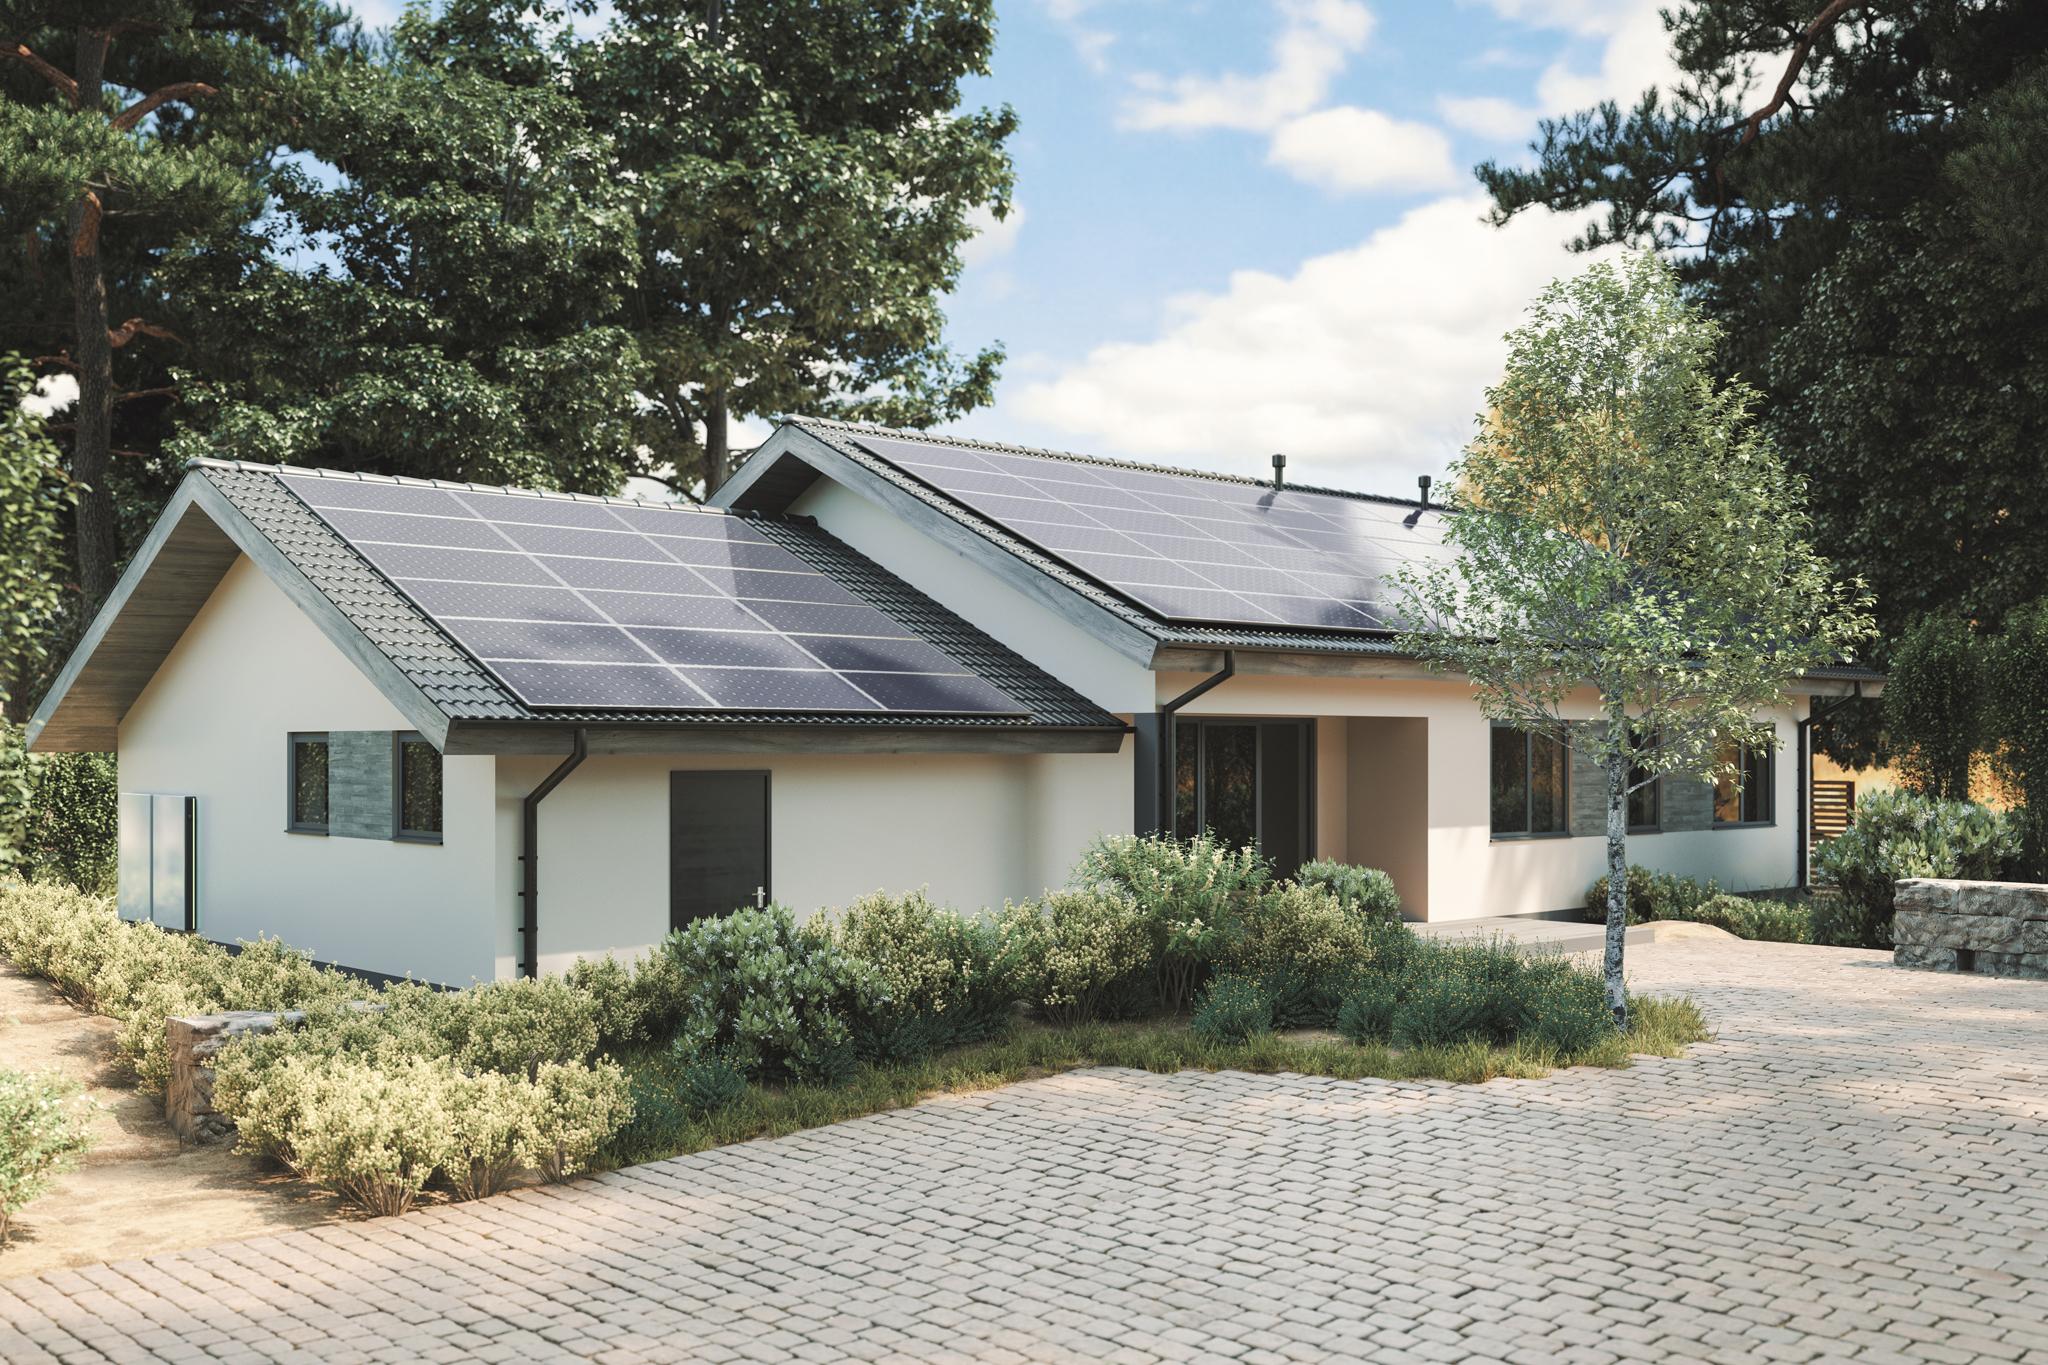 Einfamilienhaus mit PV-Anlage auf dem Dach – Photovoltaik-Komplettanlage in Berlin